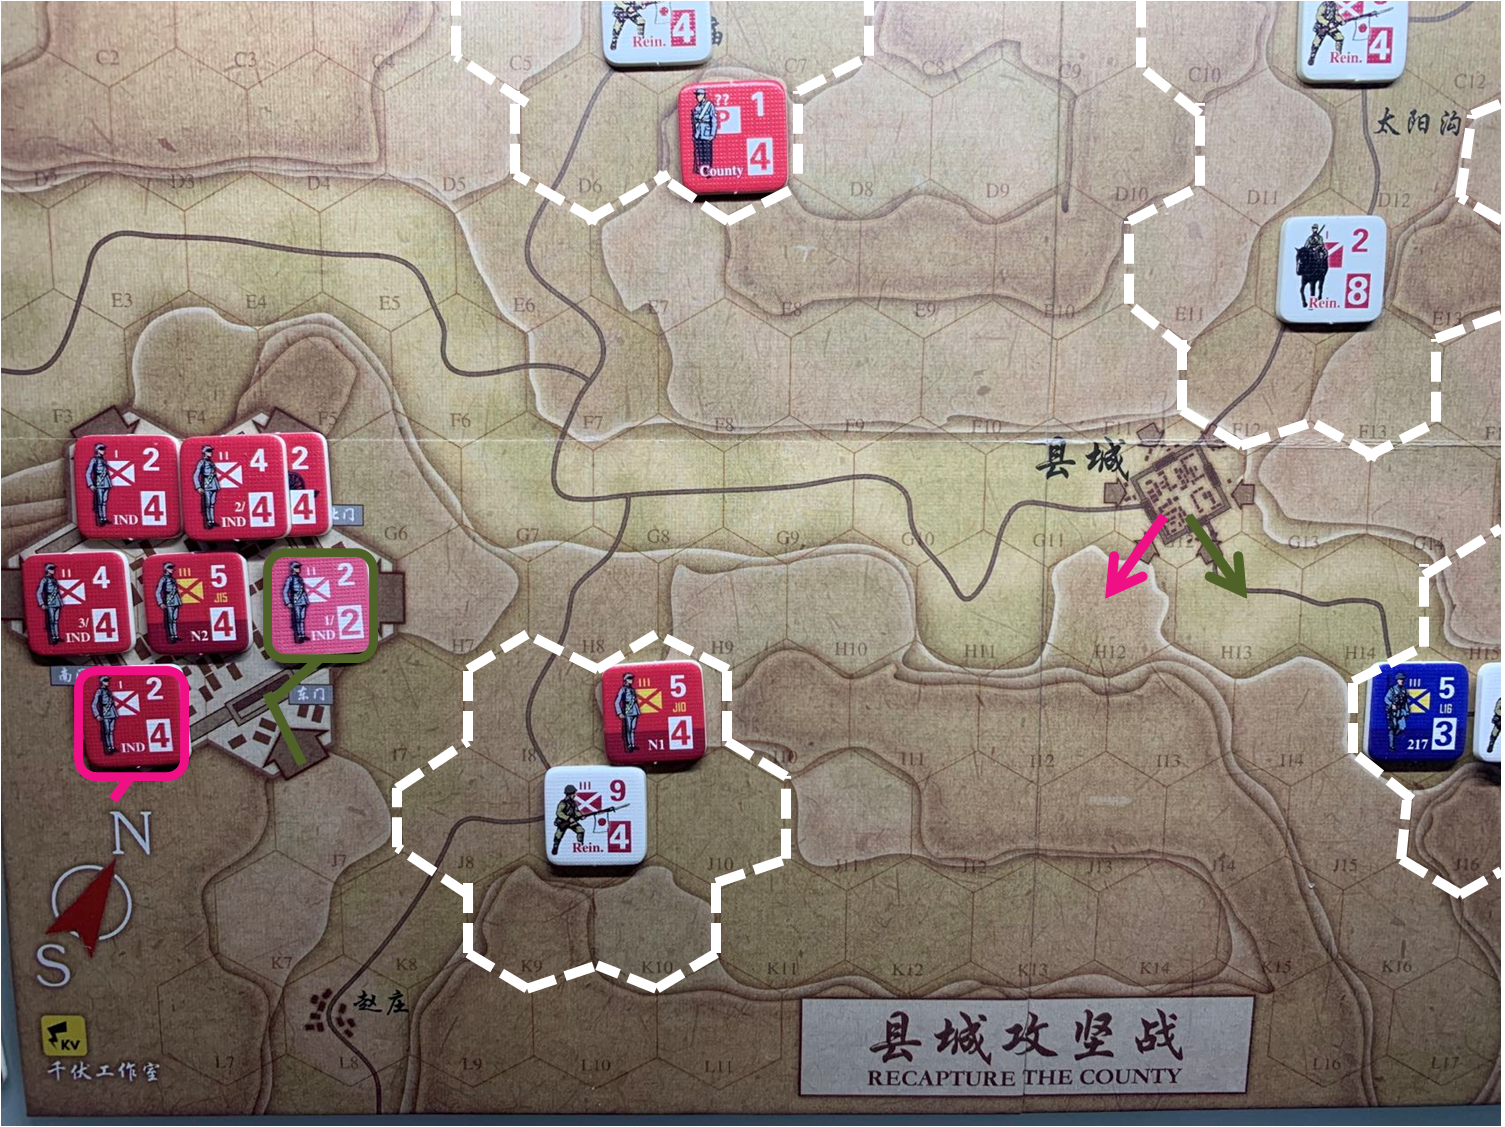 第四回合县城内共军独立团部队对于移动命令5、命令6的执行计划，及所有日军增援部队控制区覆盖范围